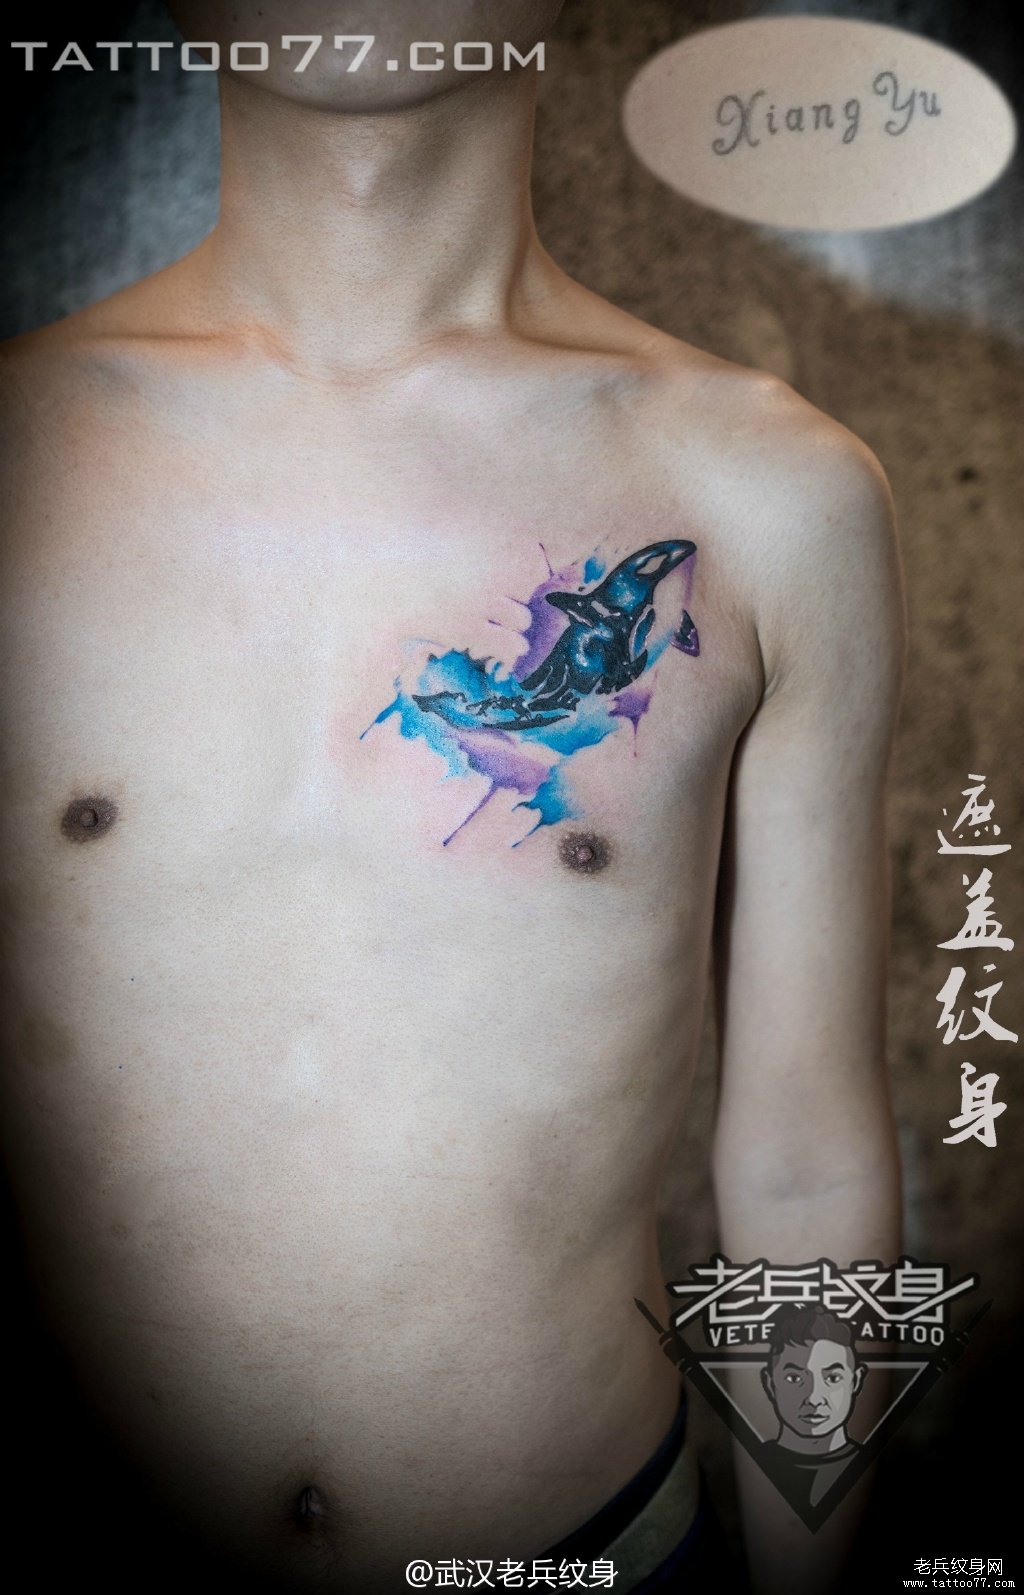 胸口泼墨海豚纹身图案作品遮盖旧纹身